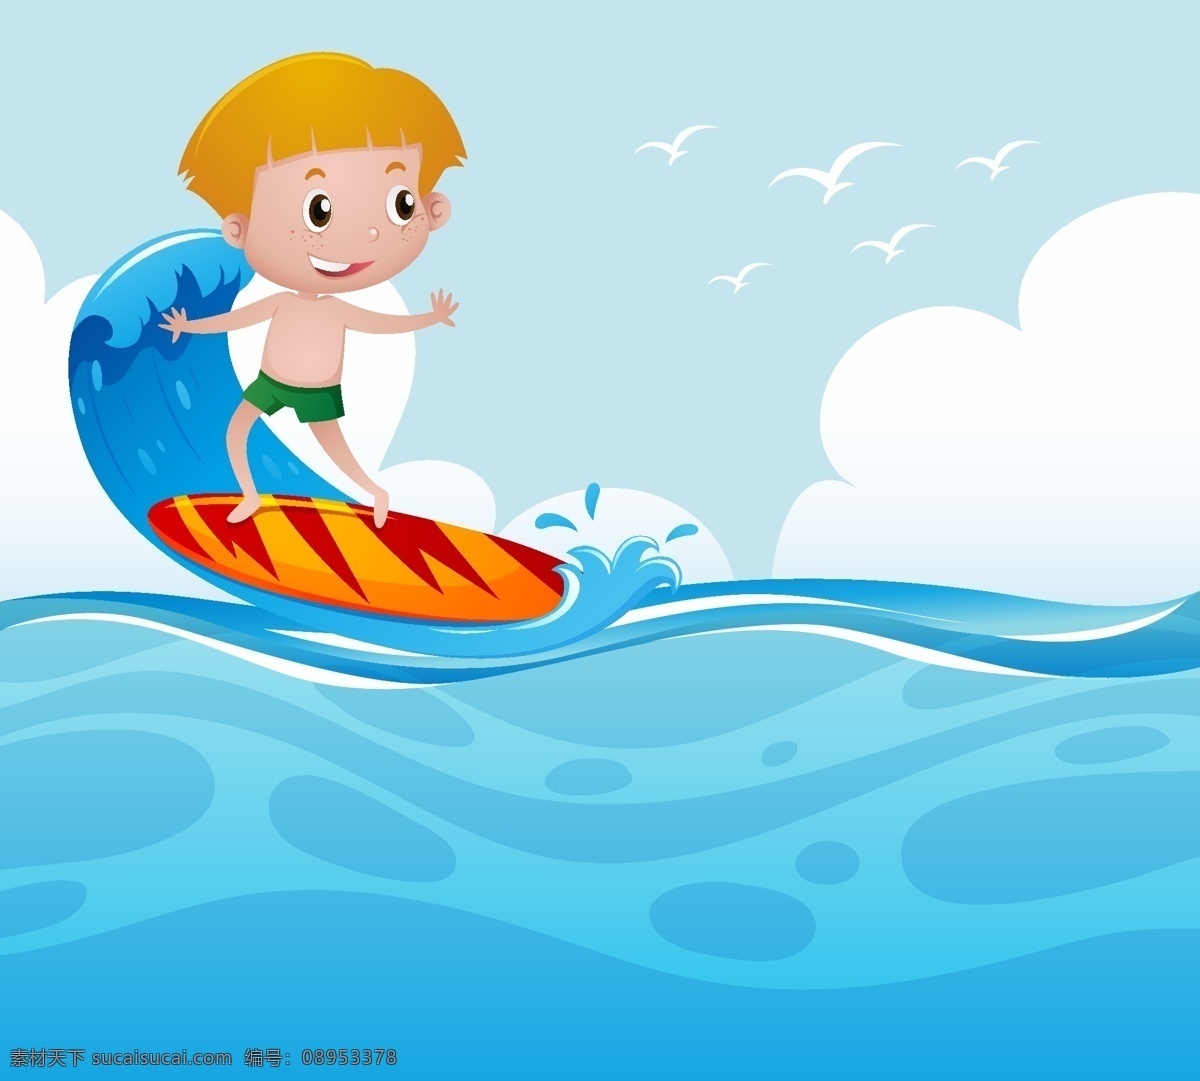 海上 冲浪 男孩 背景 儿童 波浪 运动 海洋 壁纸 色彩 丰富多彩 波浪背景 颜色 五颜六色 背景色 冲浪者